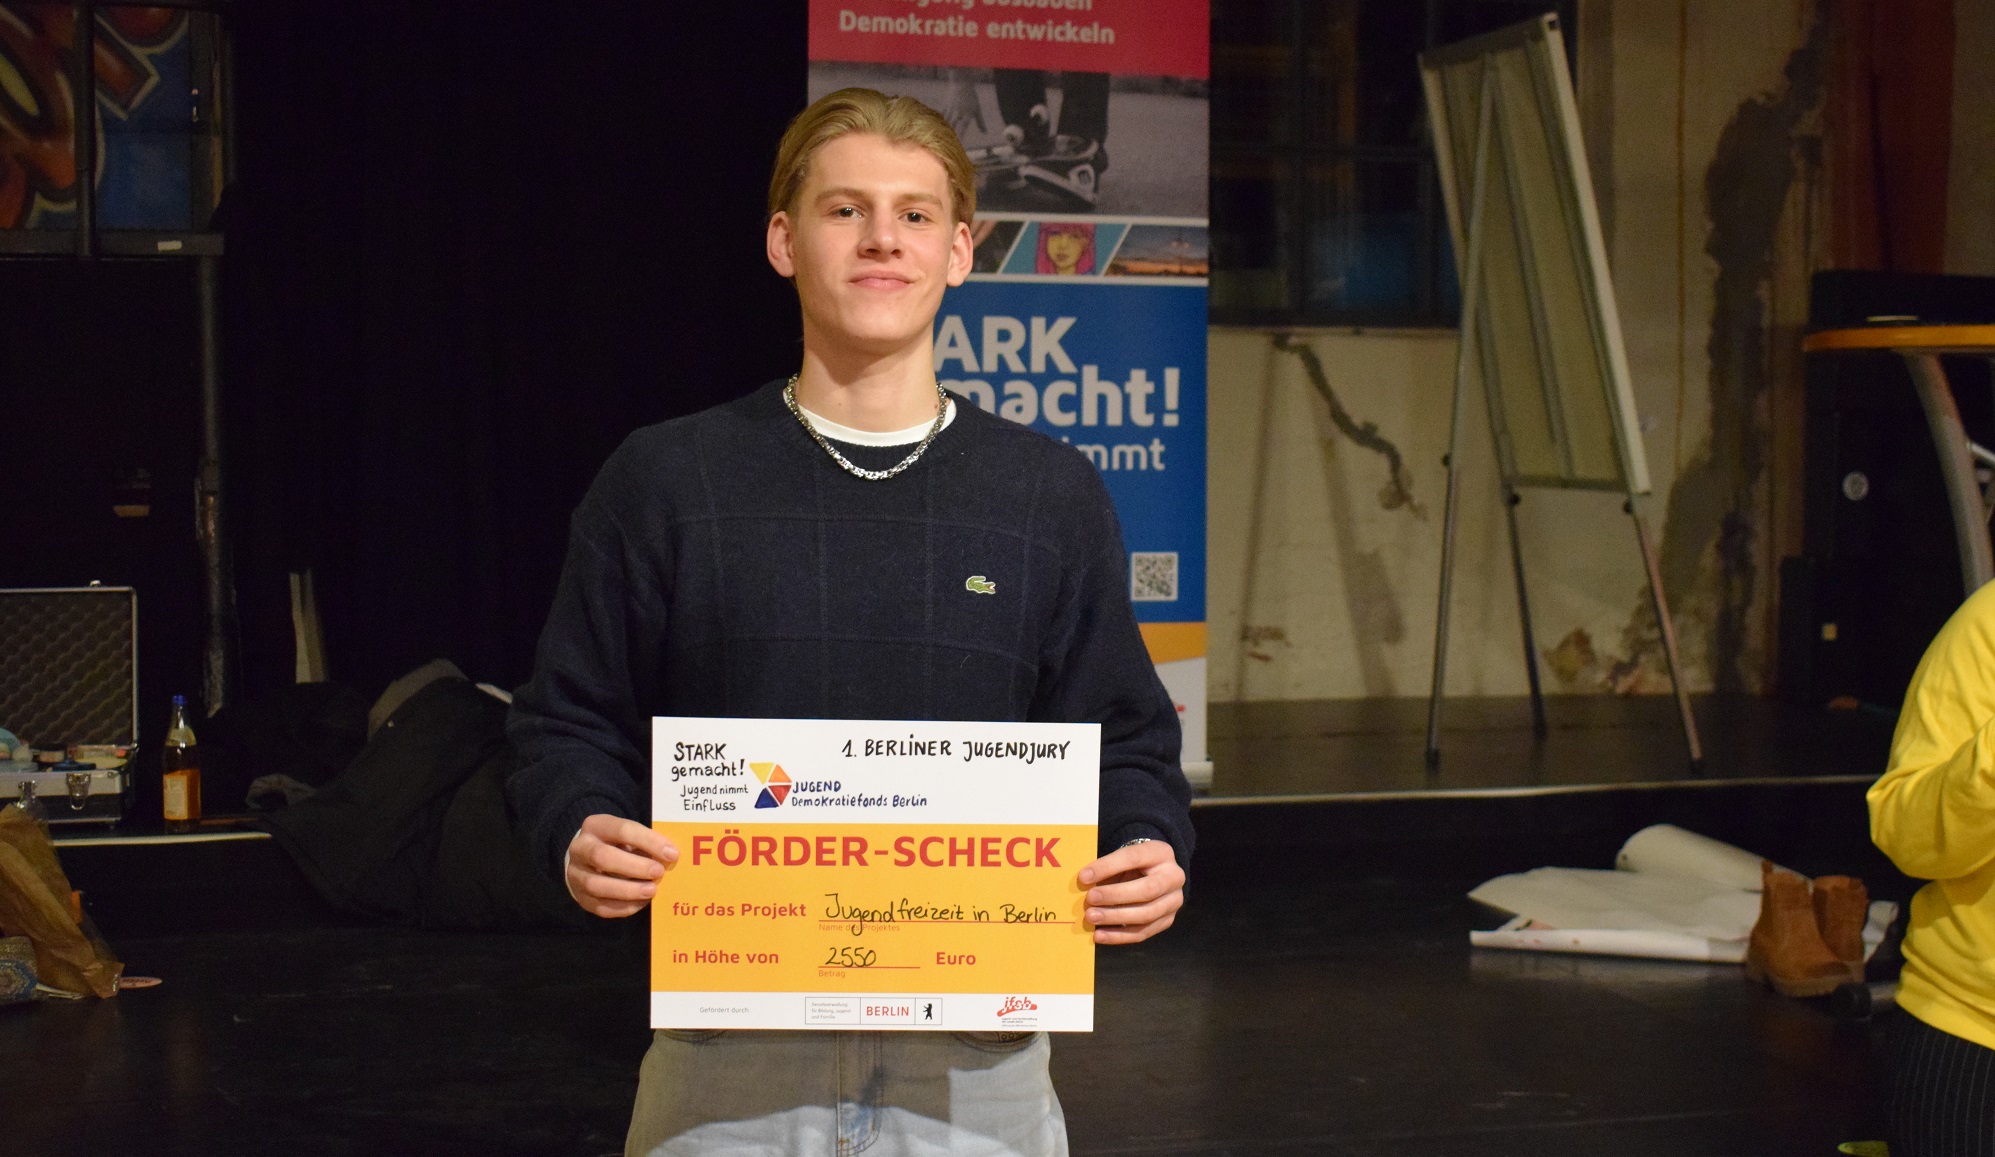 Ein junger Mensch hält den Check für das Projekt "Jugendfreizeit in Berlin" in den Händen